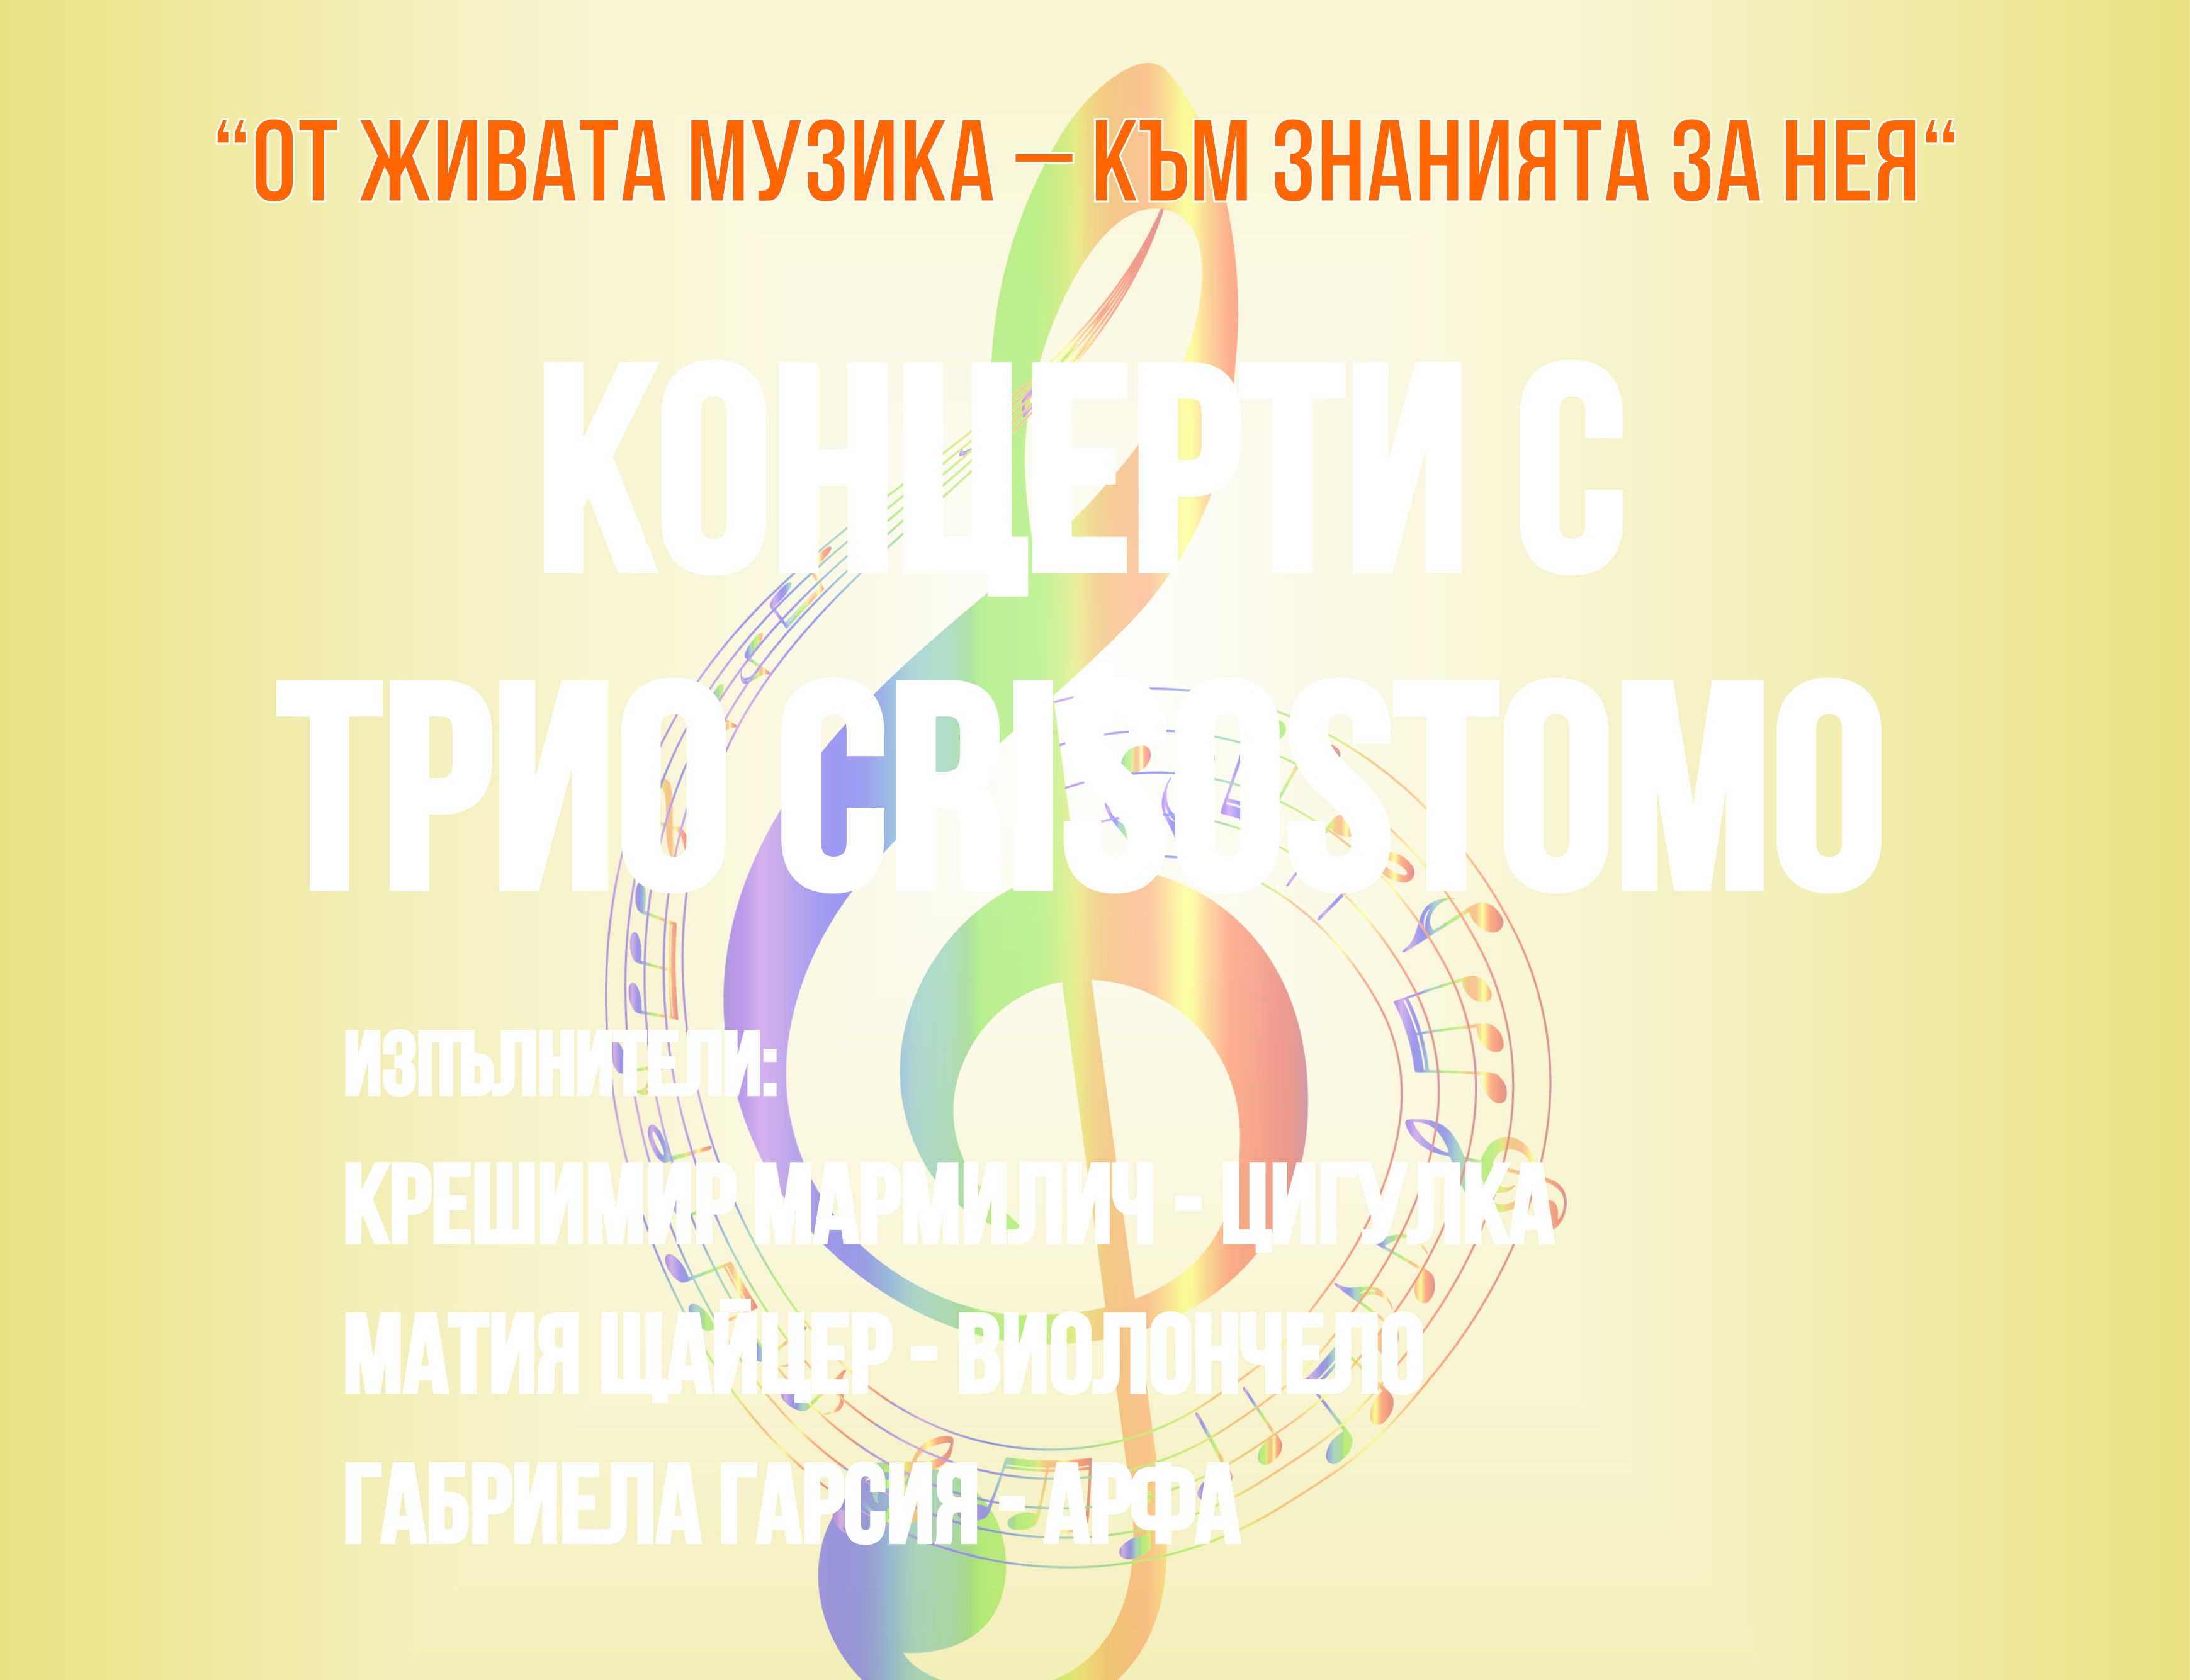 Известни хърватски музиканти ще свирят в пловдивско училище, съобщиха от